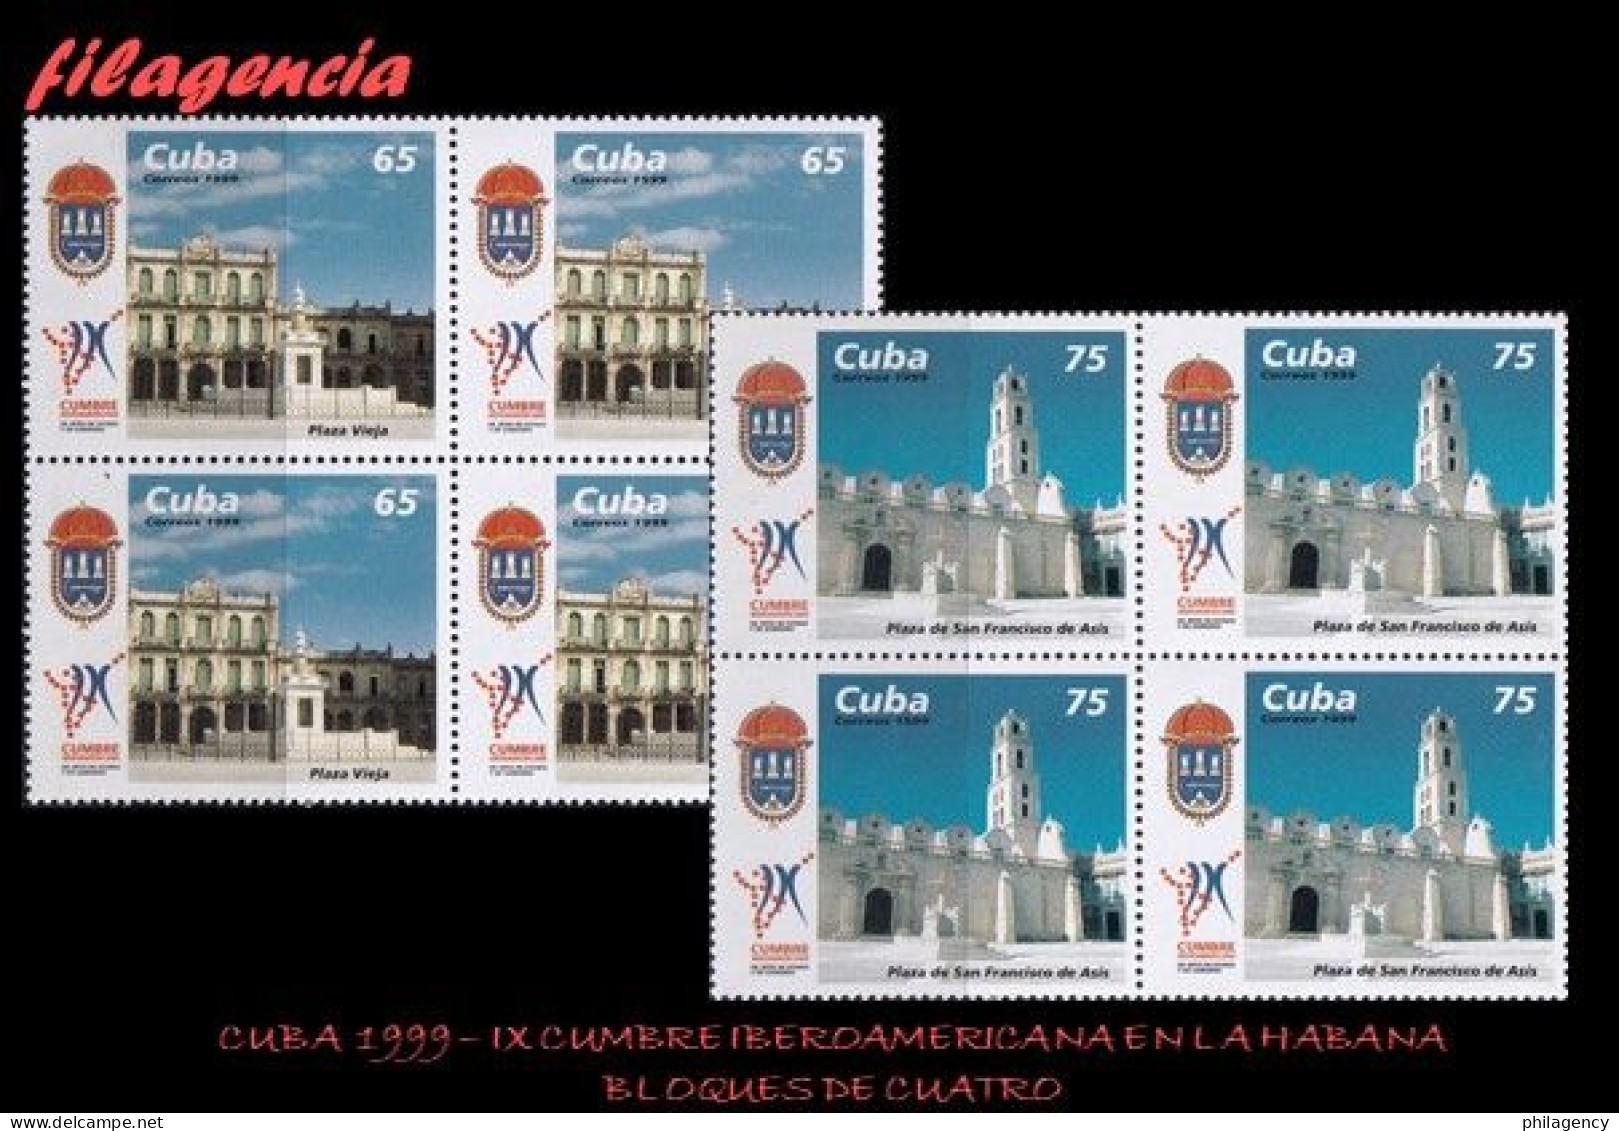 CUBA. BLOQUES DE CUATRO. 1999-27 IX CUMBRE IBEROAMERICANA DE JEFES DE ESTADO EN LA HABANA - Unused Stamps